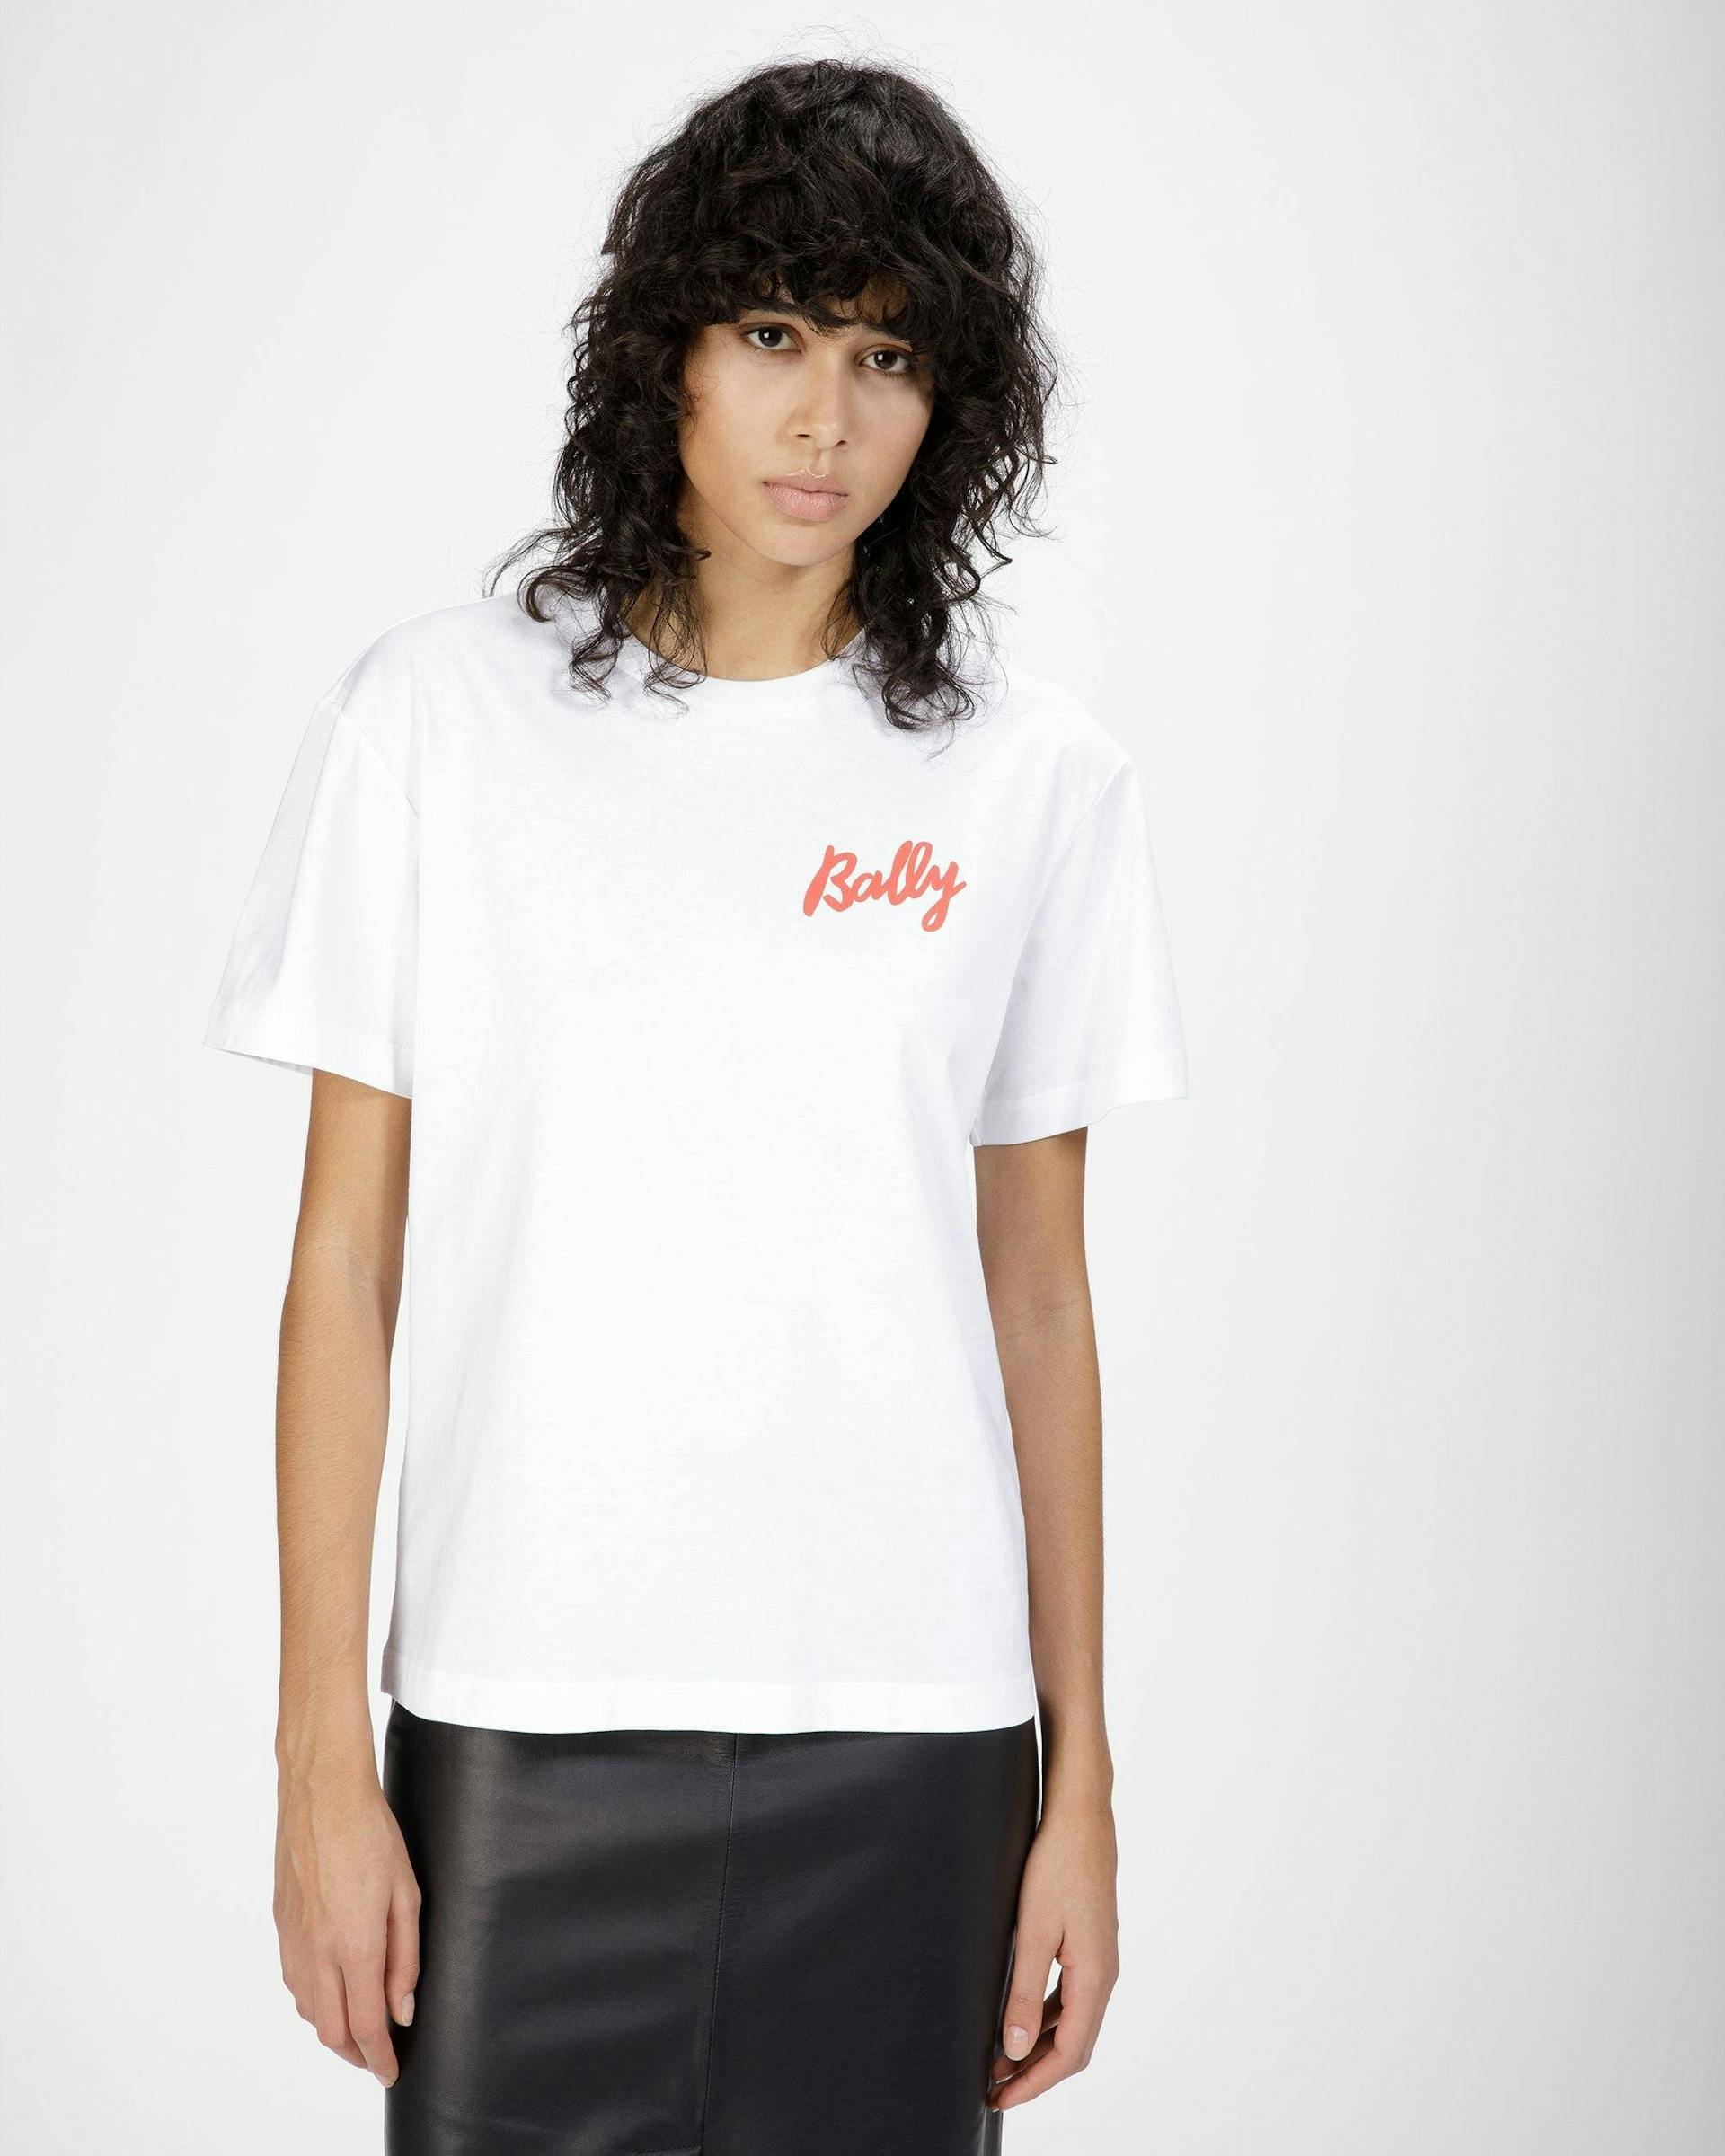 T-Shirt Aus Baumwolle In Weiß - Damen - Bally - 03